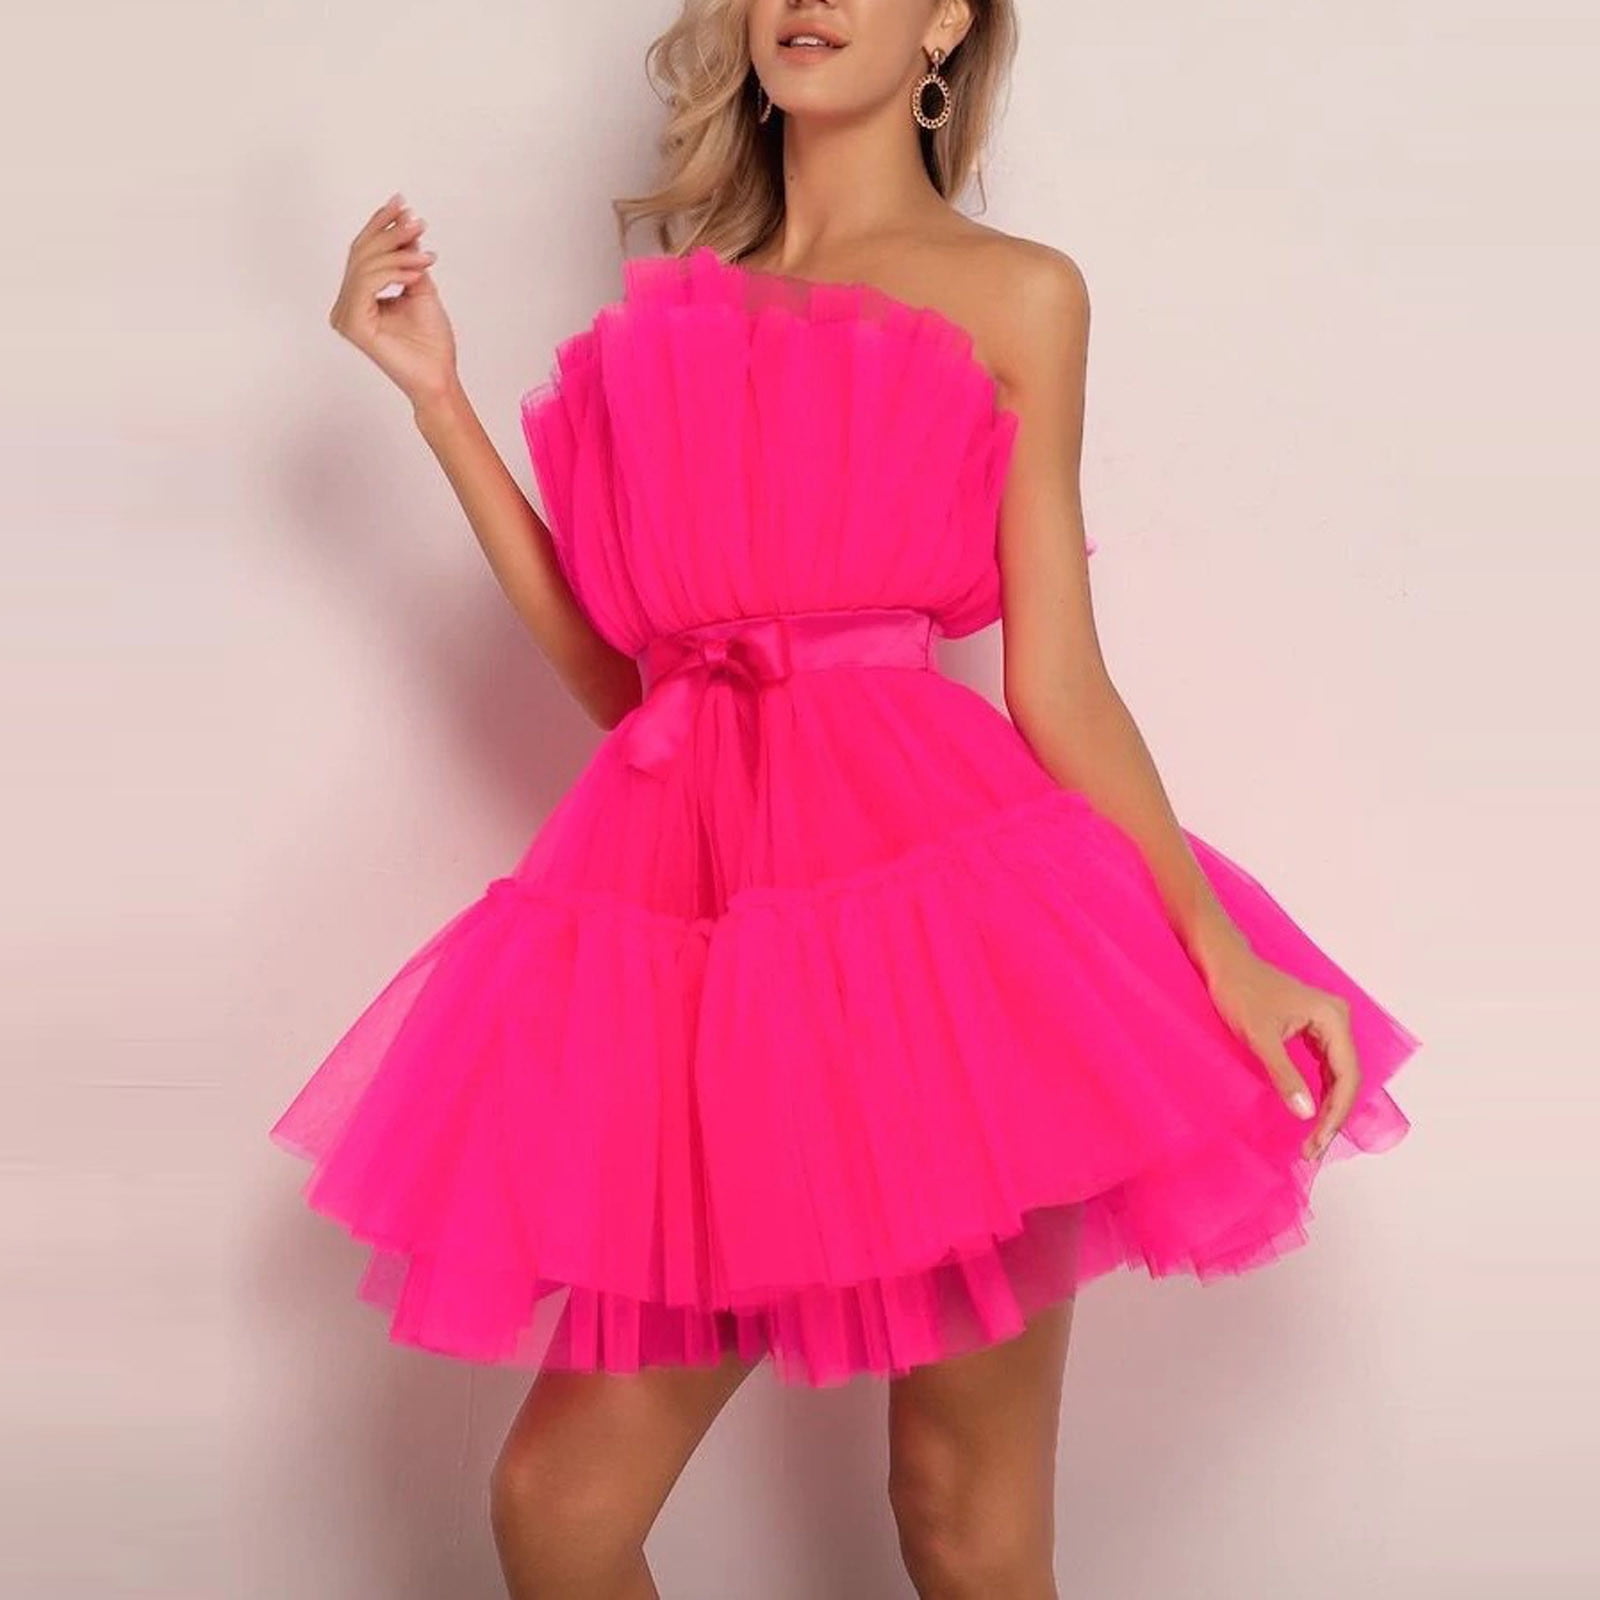 Womens Dress Clearance Women Tulle Dress Sleeveless Short Dress Solid Mesh  Princess Steapless Party Dress Hot Pink Xl D3115